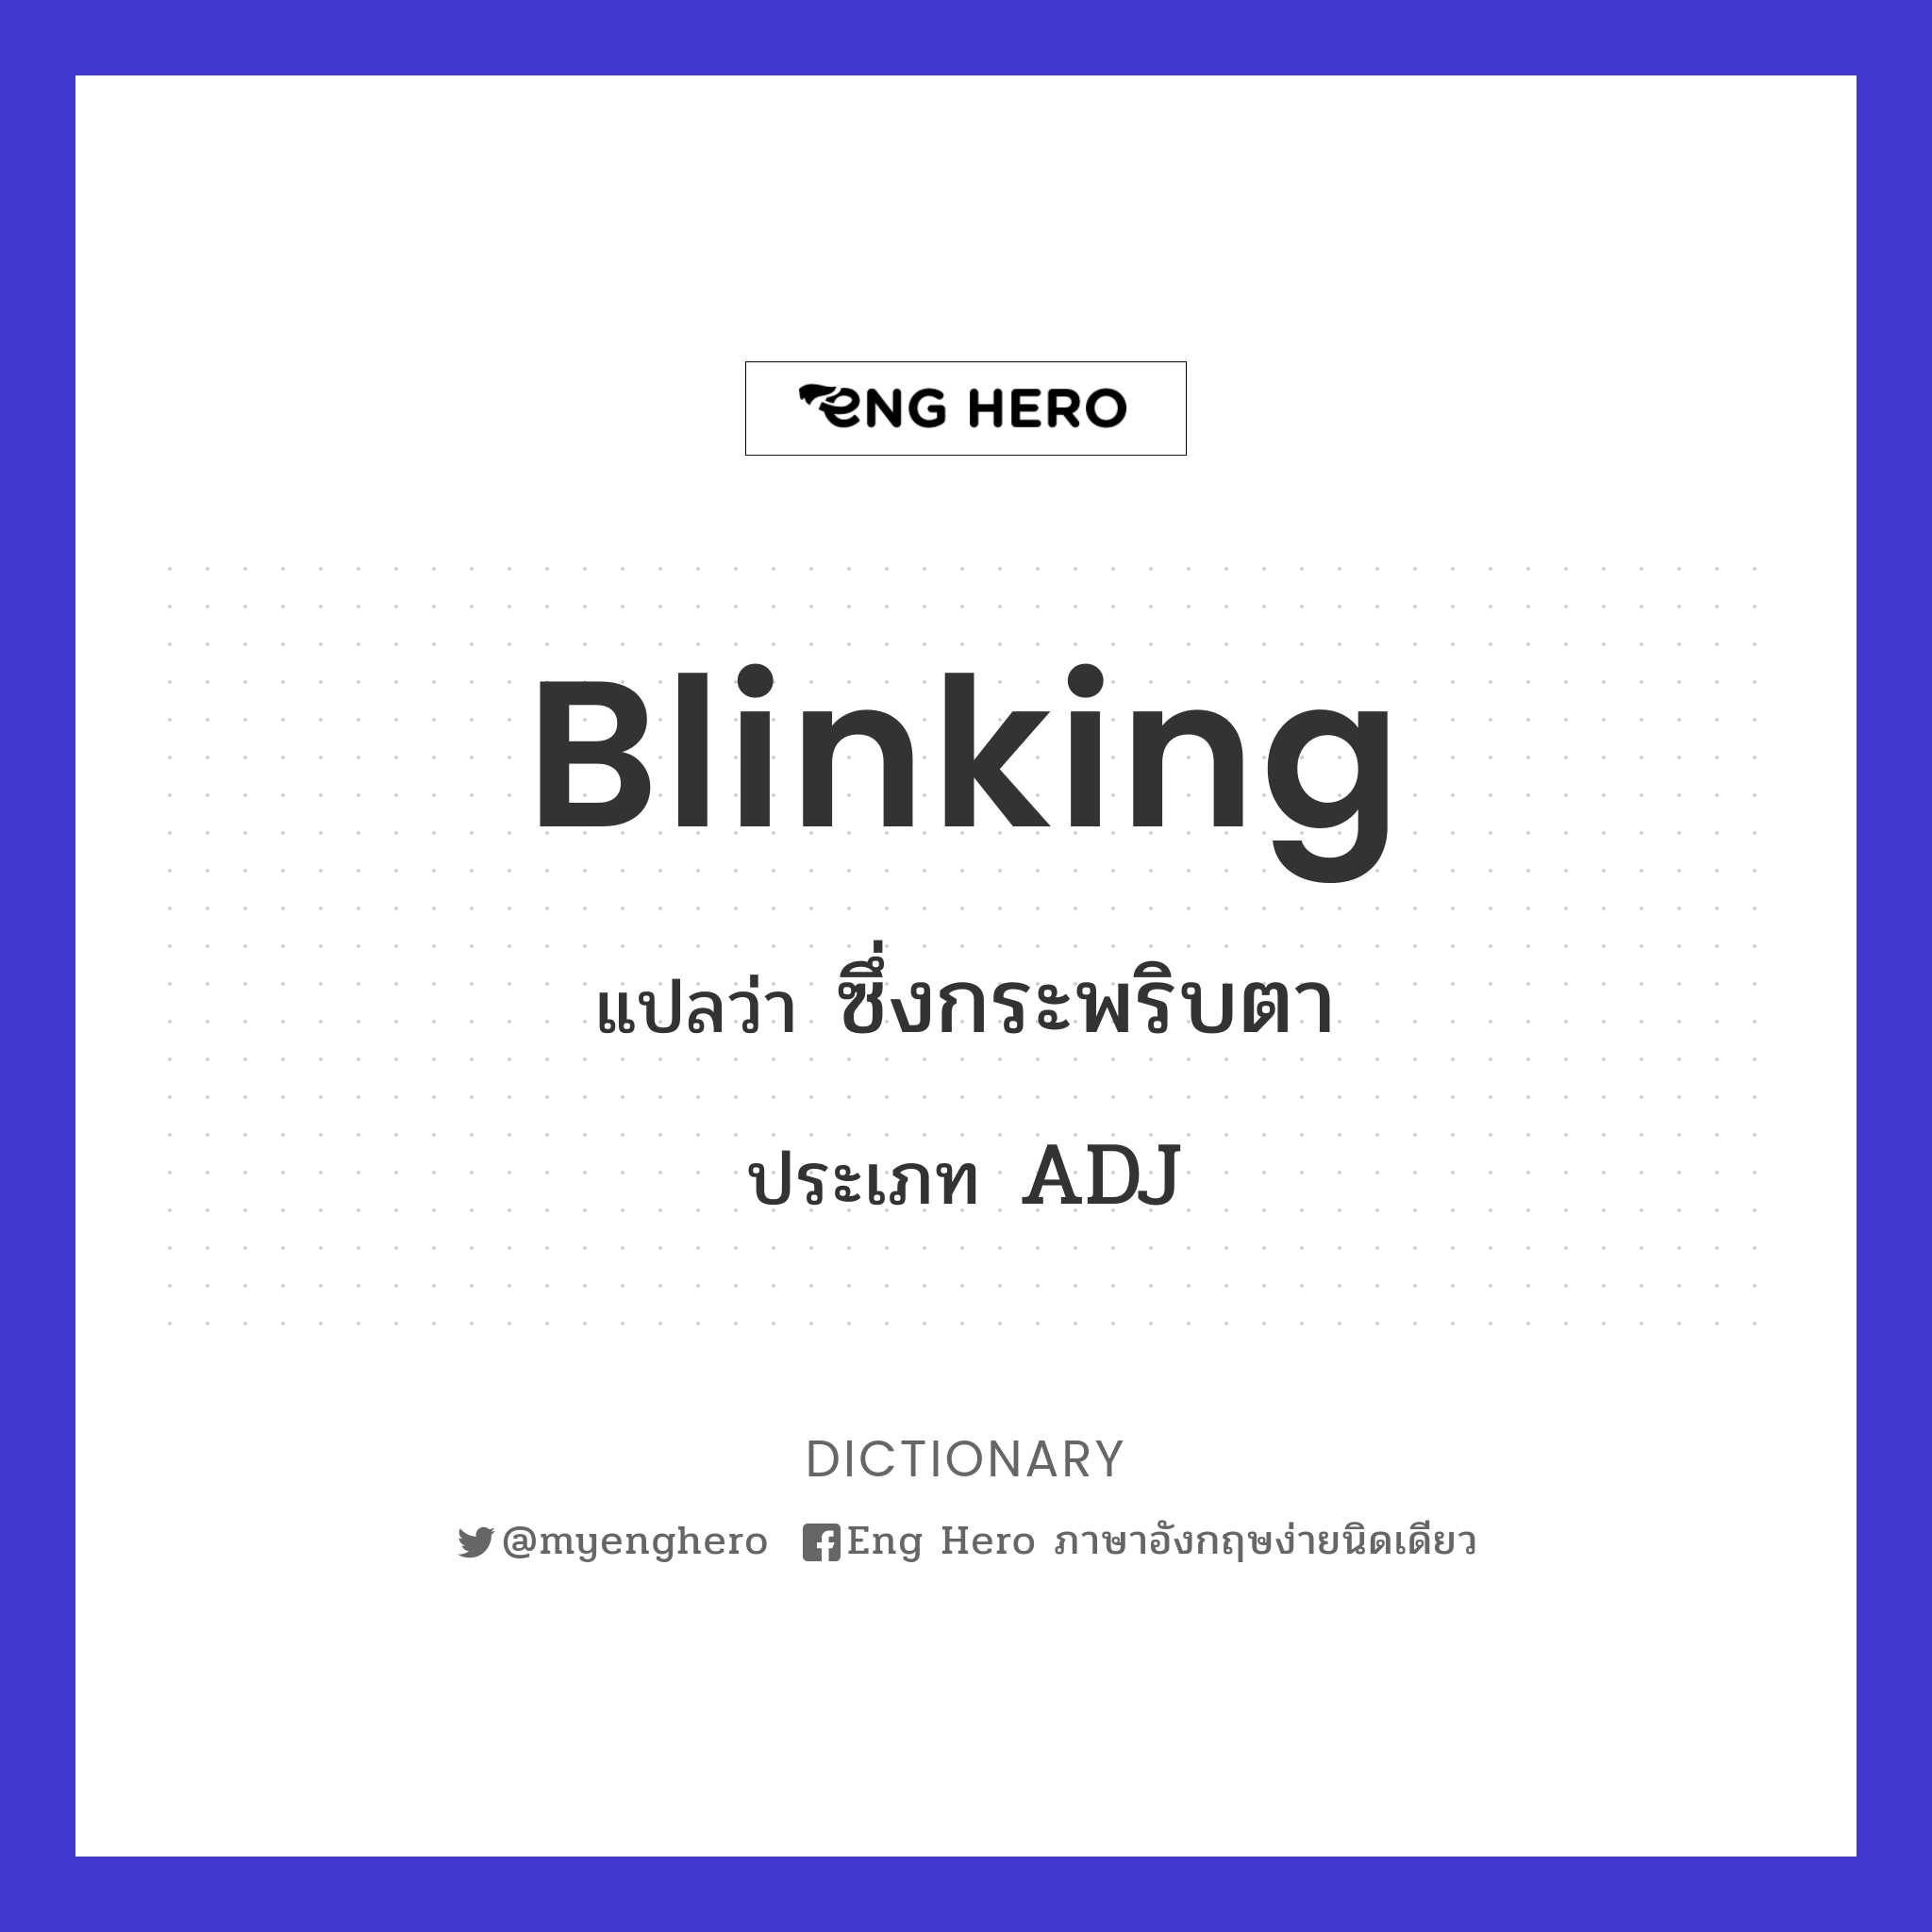 blinking